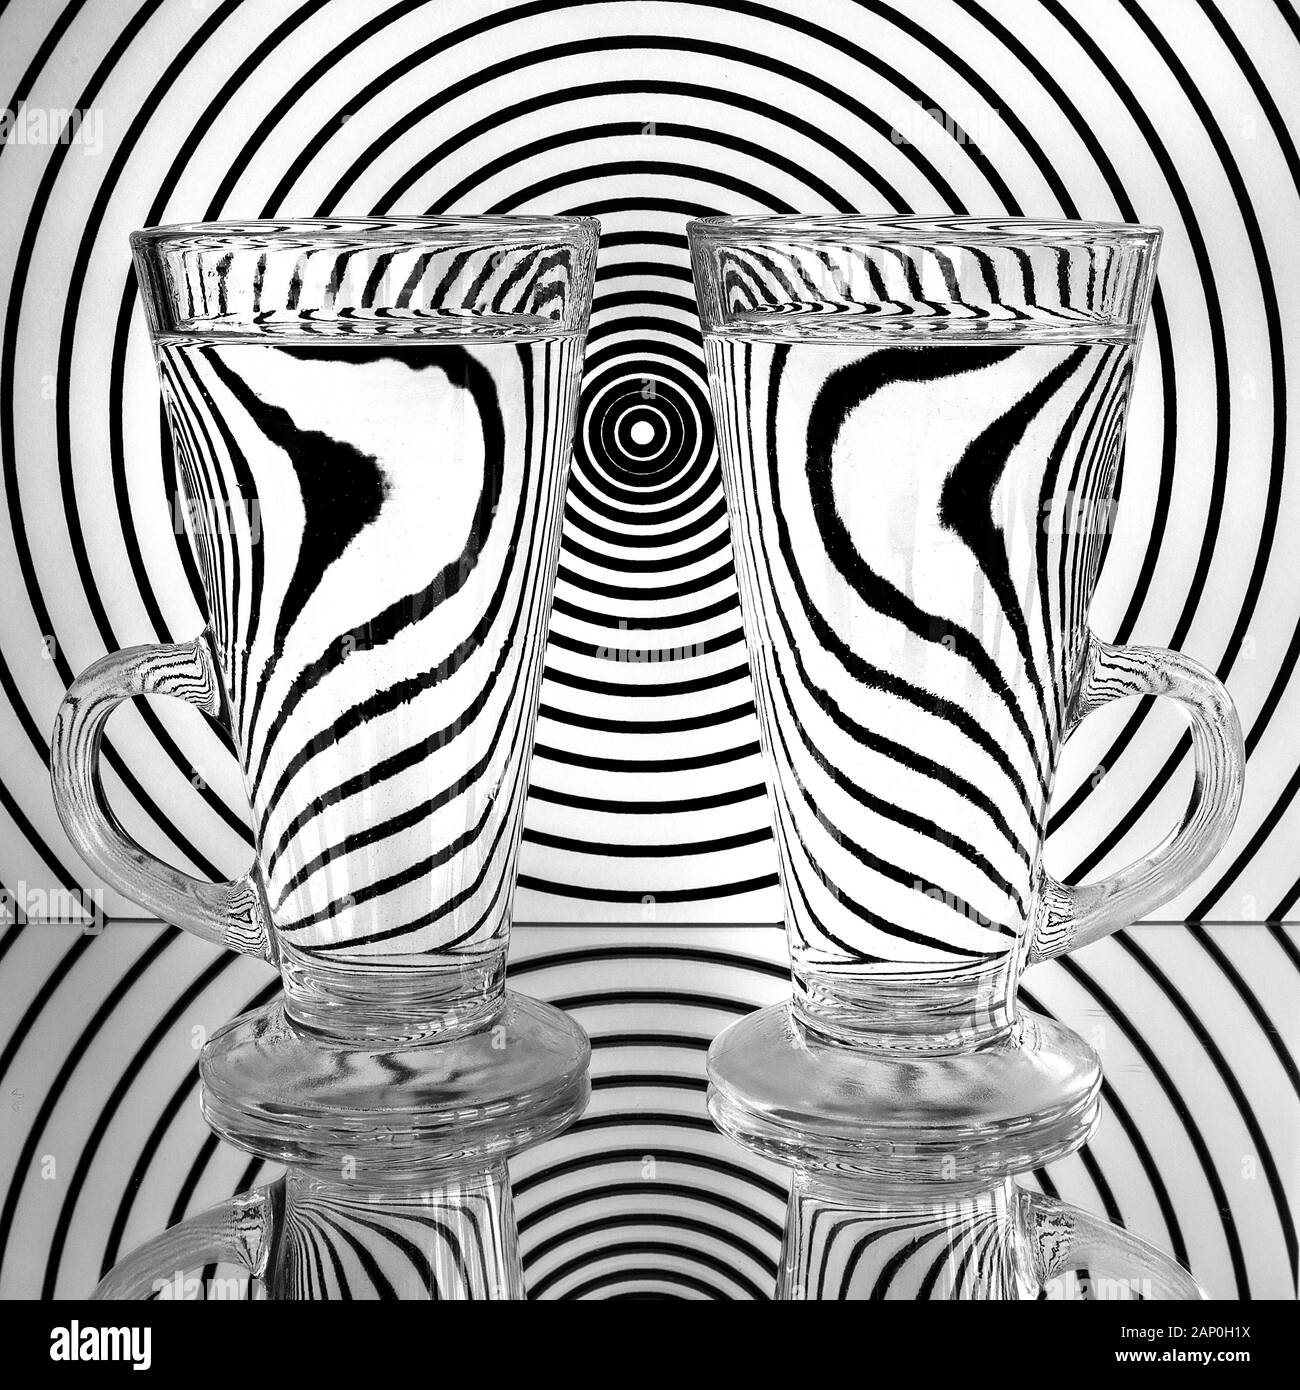 Une image pour démontrer les effets optiques dans le verre et l'eau à des fins artistiques et éducatives. Banque D'Images